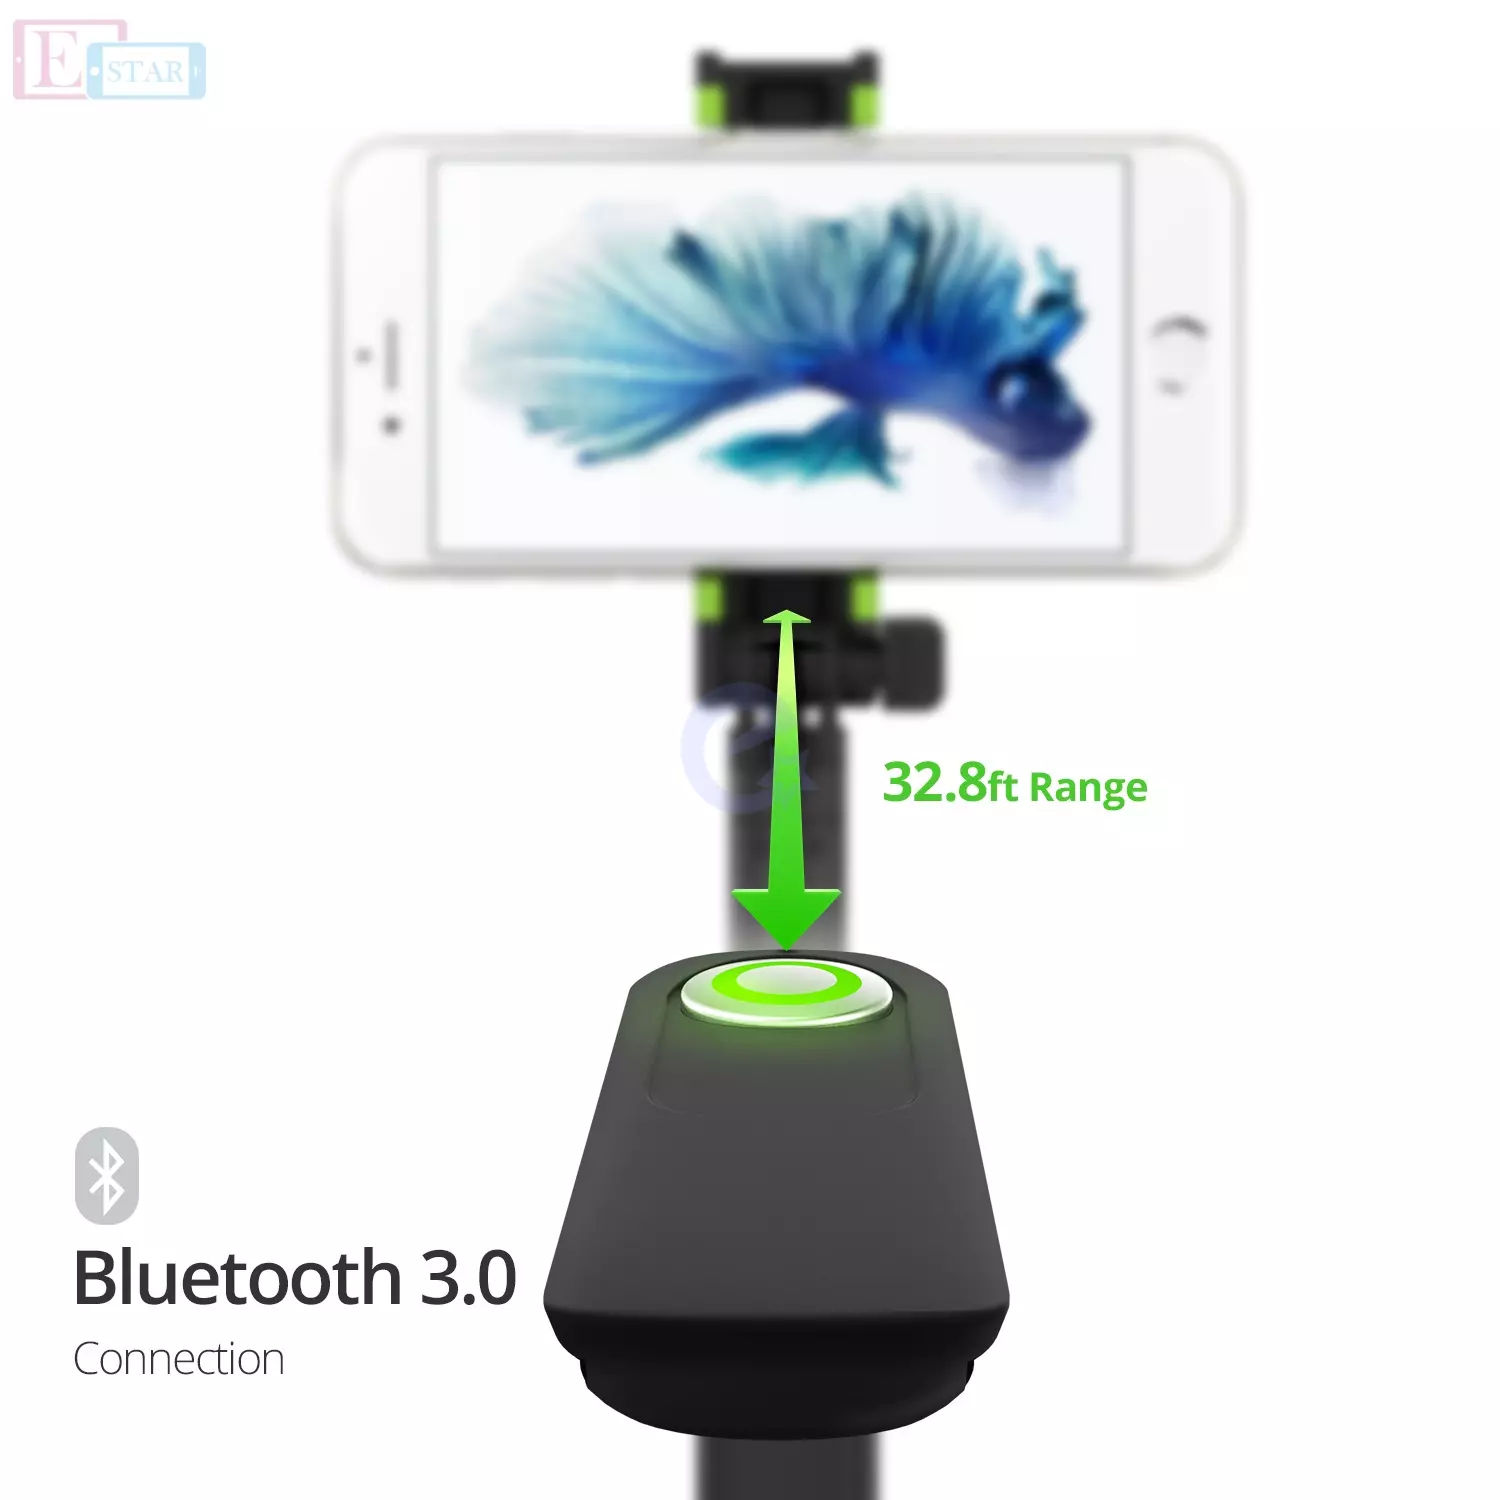 Оригинальная селфи палка iOttie MiGo Mini Selfie Stick, GoPro Pole для Apple iPhone и смартфонов White (Белый) HLMPIO120WH